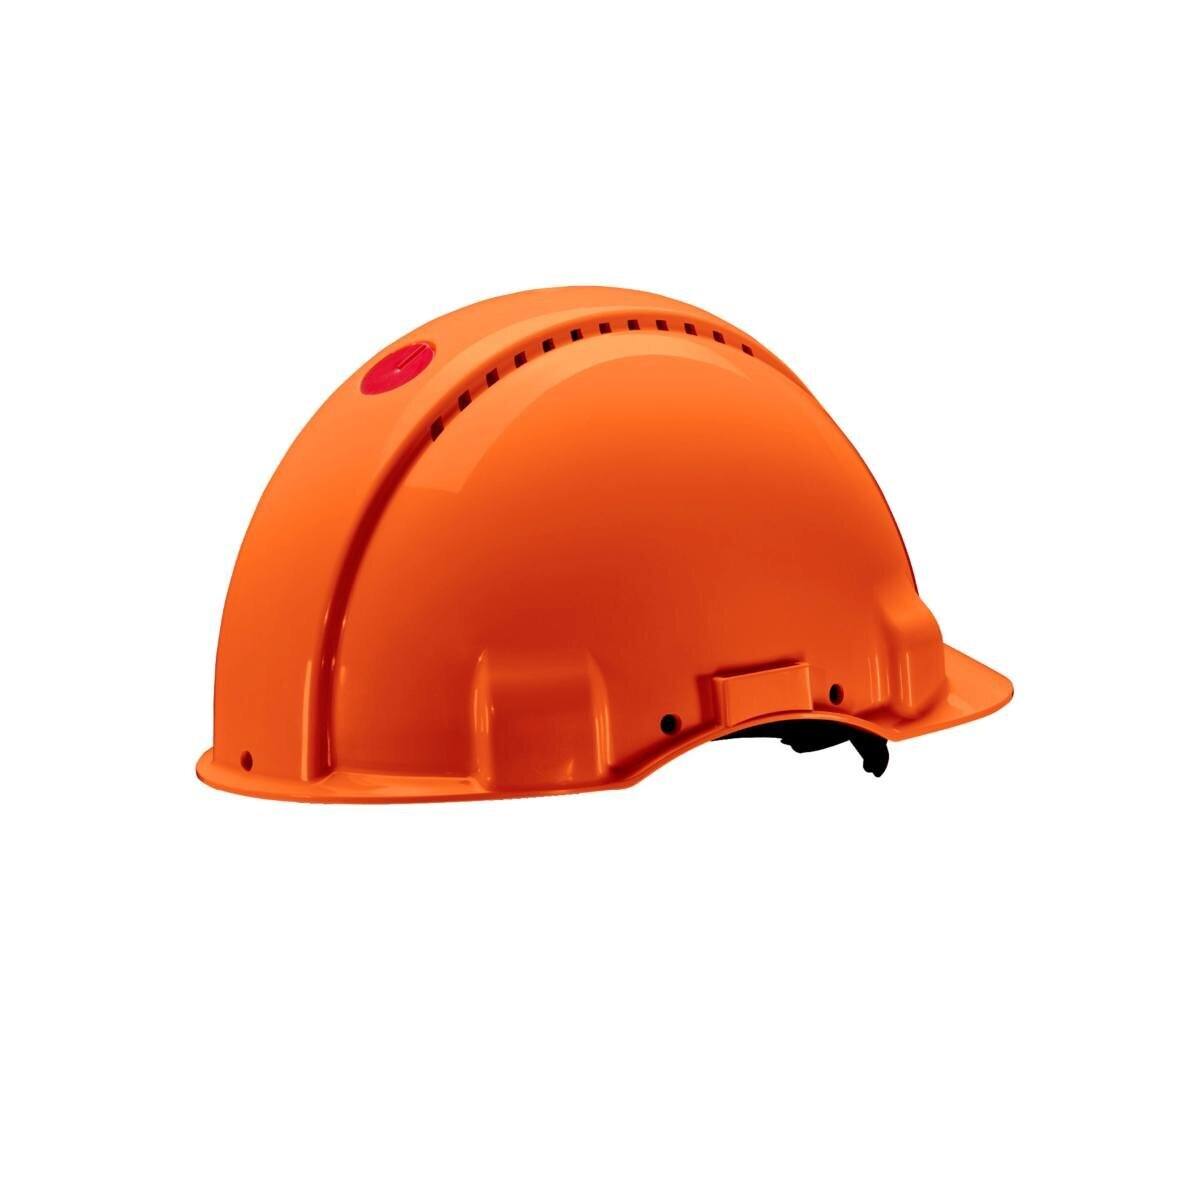 Elmetto di sicurezza 3M G3000 G30MUO in arancione, ventilato, con uvicatore, cricchetto e fascia antisudore in pelle